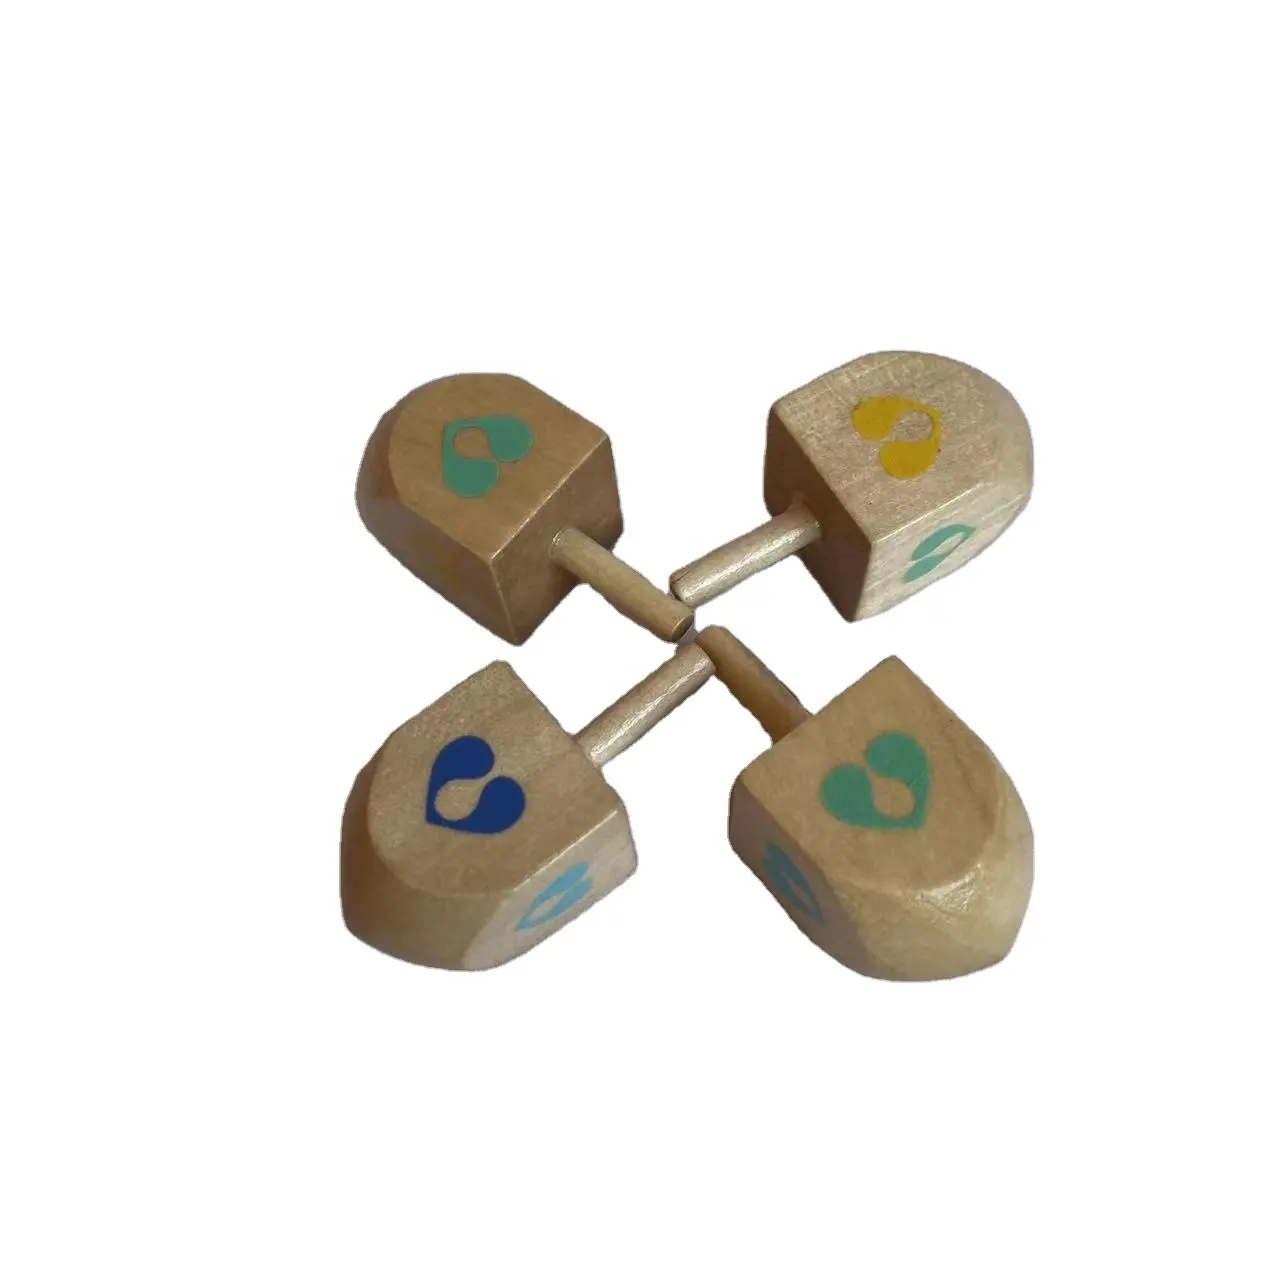 Clásico personalizado niños juguete de madera Spinning Top de los niños de juguete de madera mini spinning top